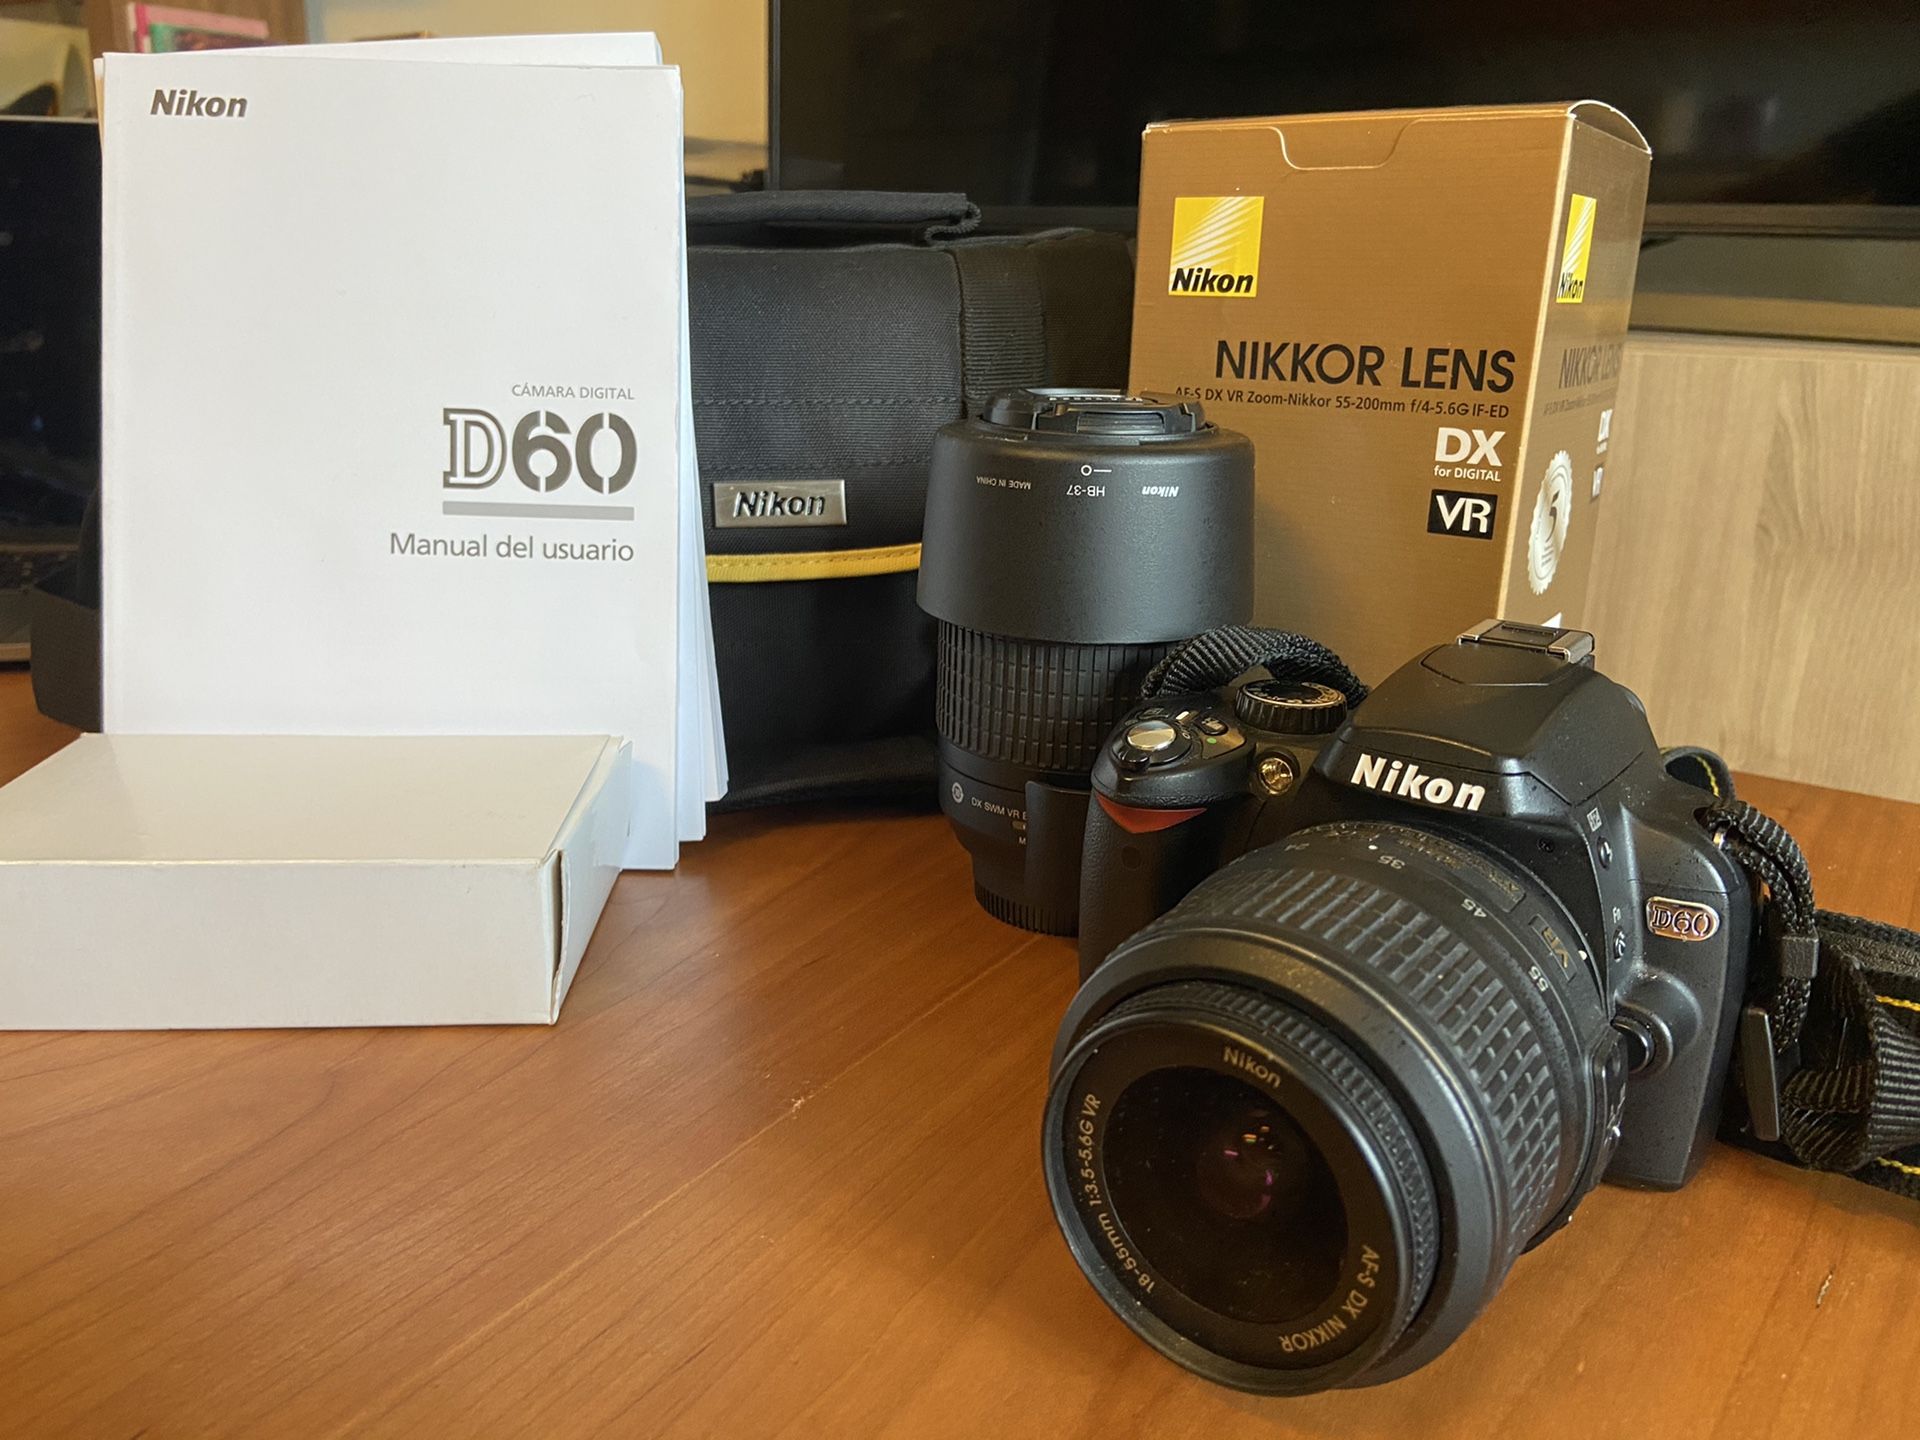 Nikon Bundle: D60 Body, 18-55mm Lens & 55-200mm Lens